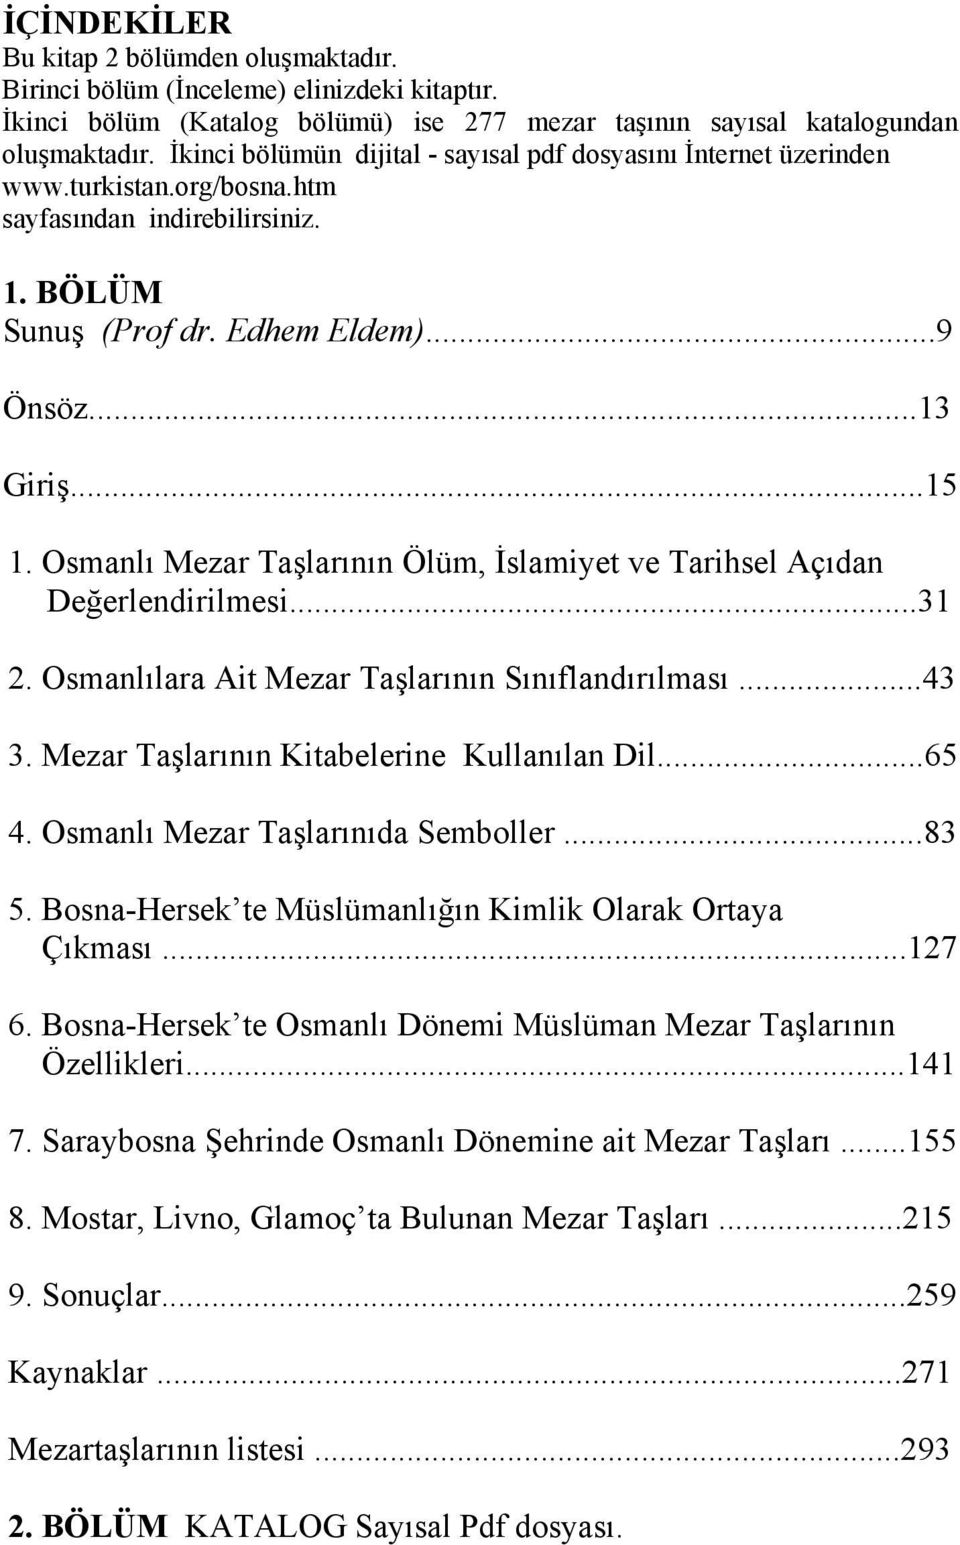 Osmanlı Mezar Taşlarının Ölüm, İslamiyet ve Tarihsel Açıdan Değerlendirilmesi...31 2. Osmanlılara Ait Mezar Taşlarının Sınıflandırılması...43 3. Mezar Taşlarının Kitabelerine Kullanılan Dil...65 4.